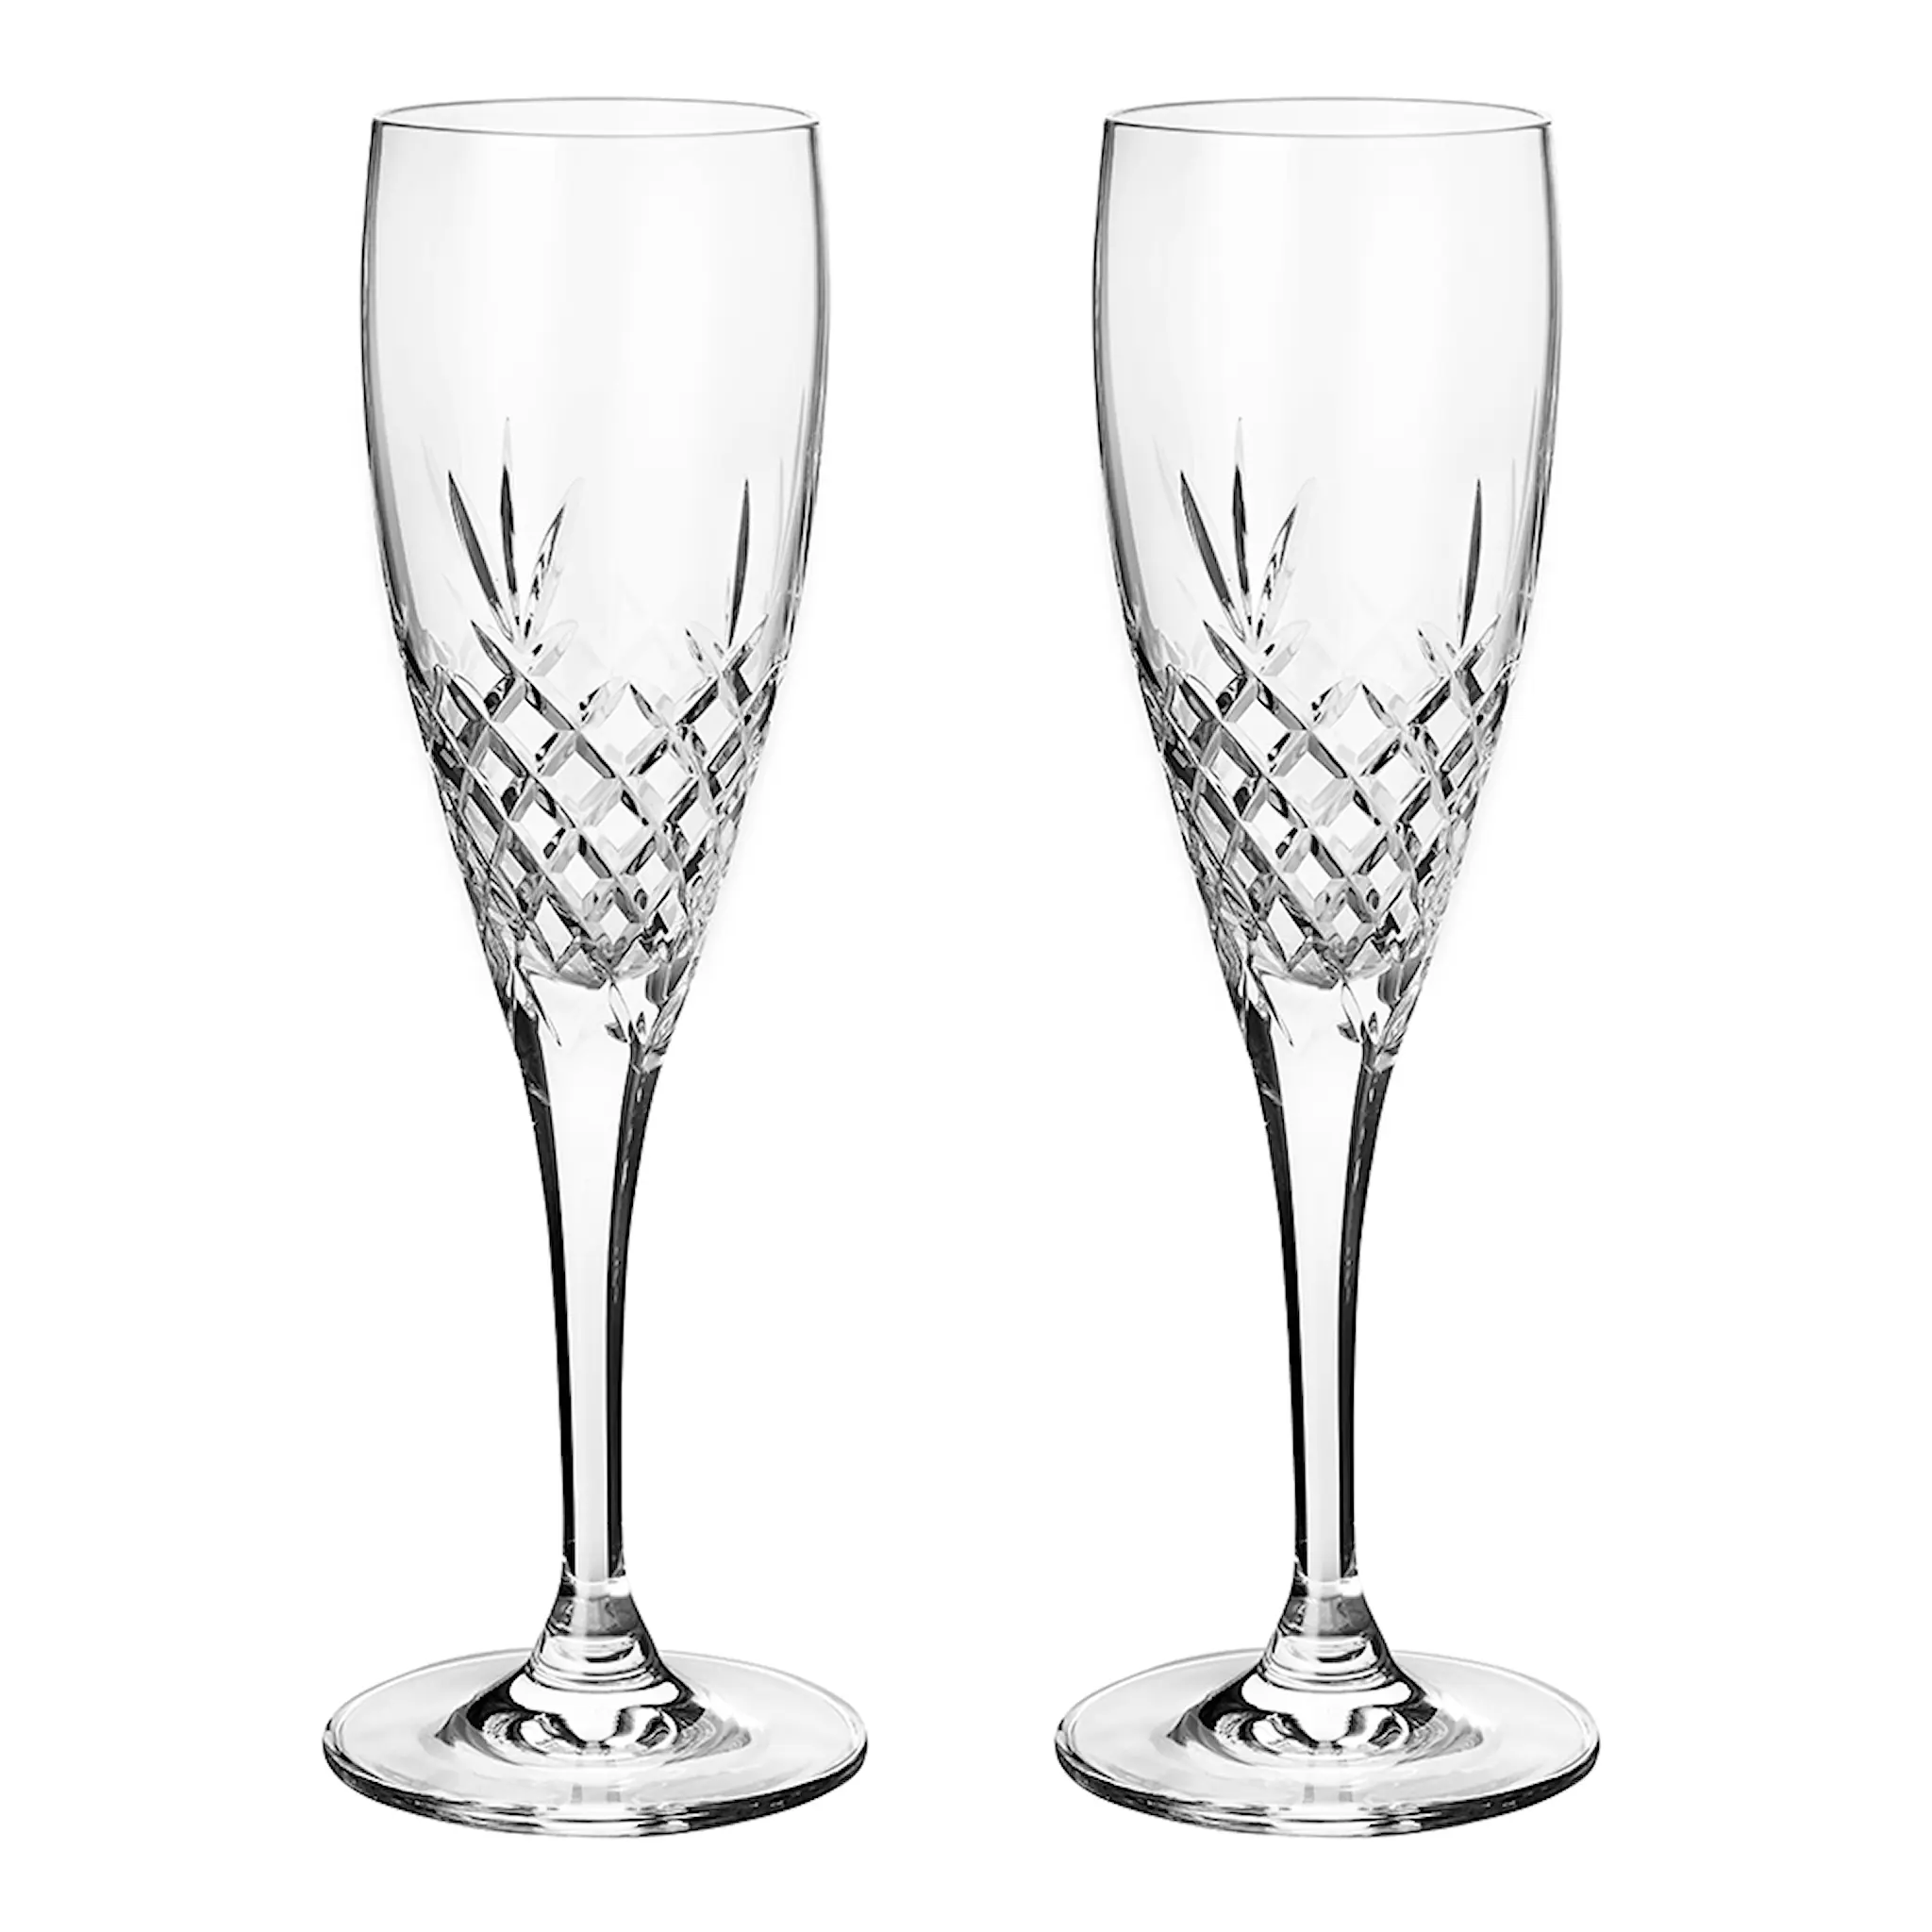 Frederik Bagger Crispy Celebration champagneglass 22 cl 2 stk